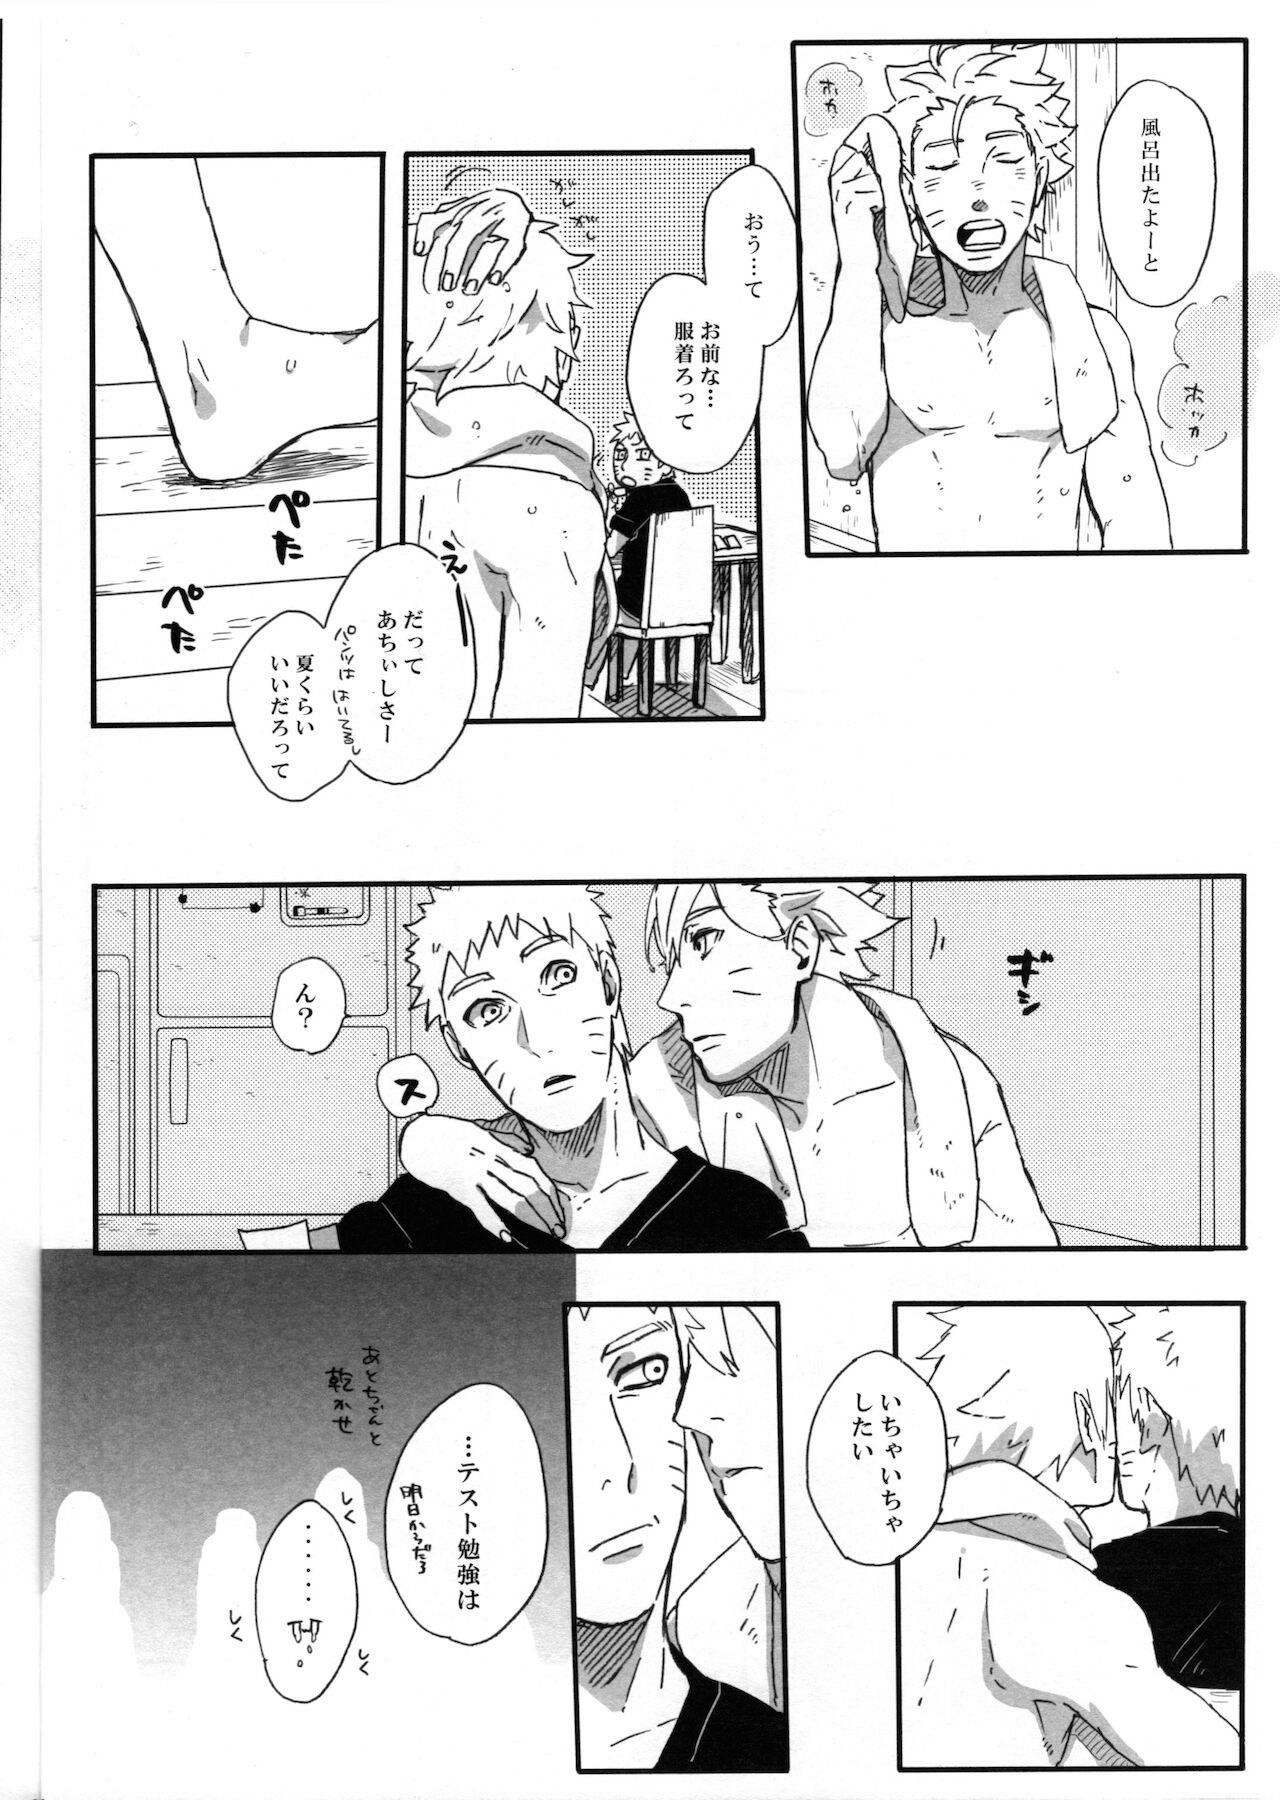 Abuse Getsuyou wa itsumo chikoku sunzen - Naruto Blackcocks - Page 11